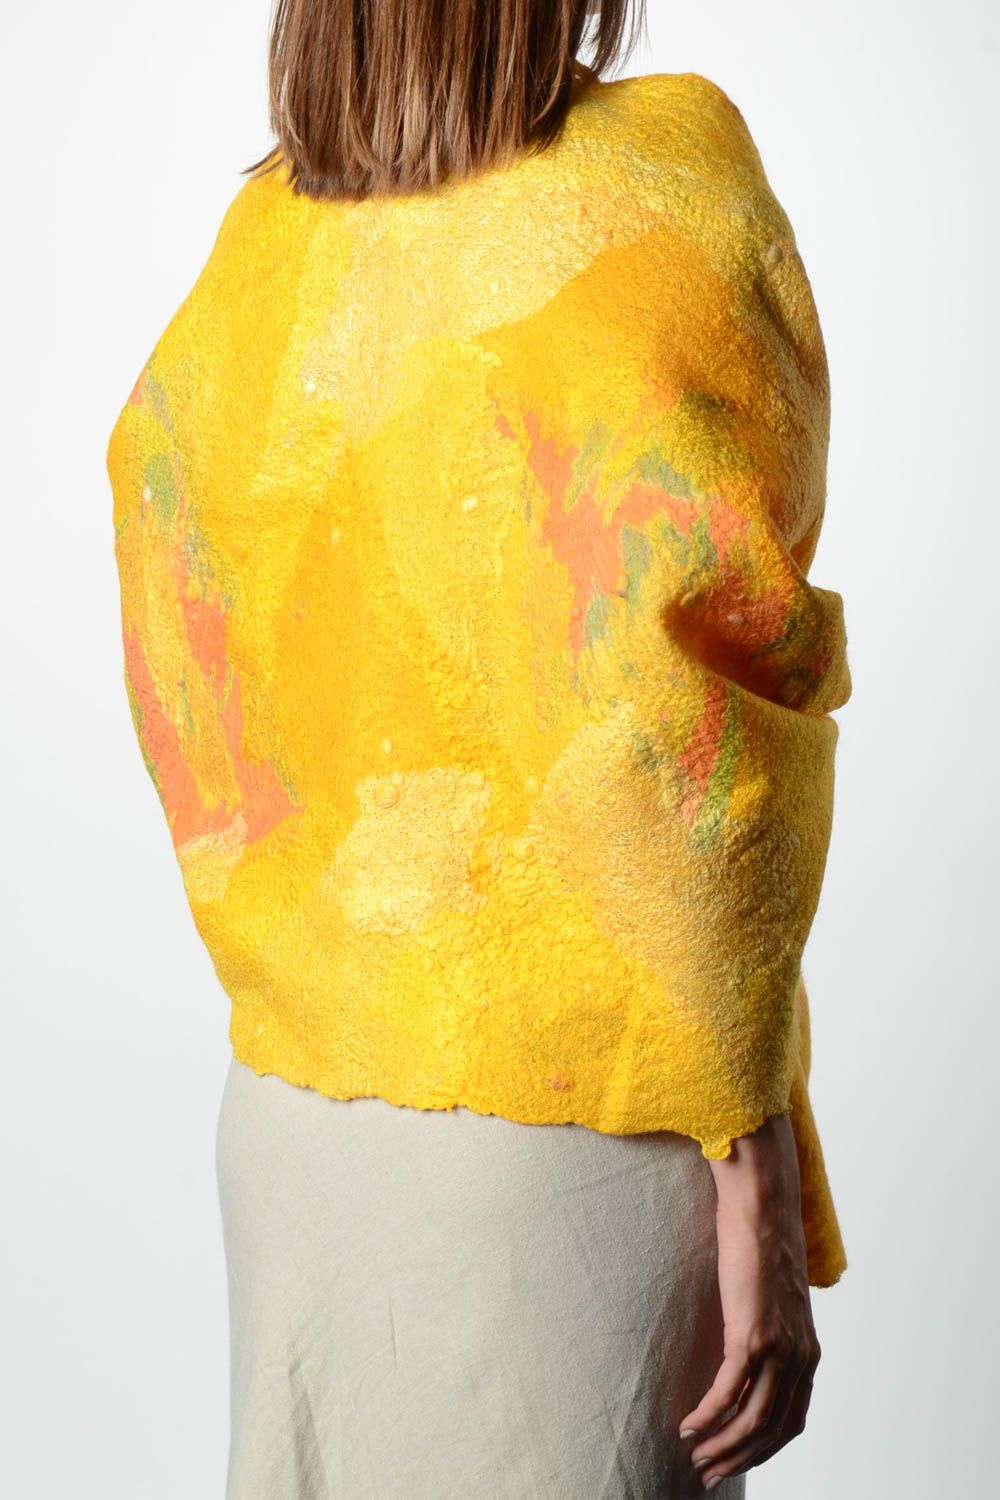 Châle femme fait main Accessoire laine jaune chaud Cadeau femme original photo 2